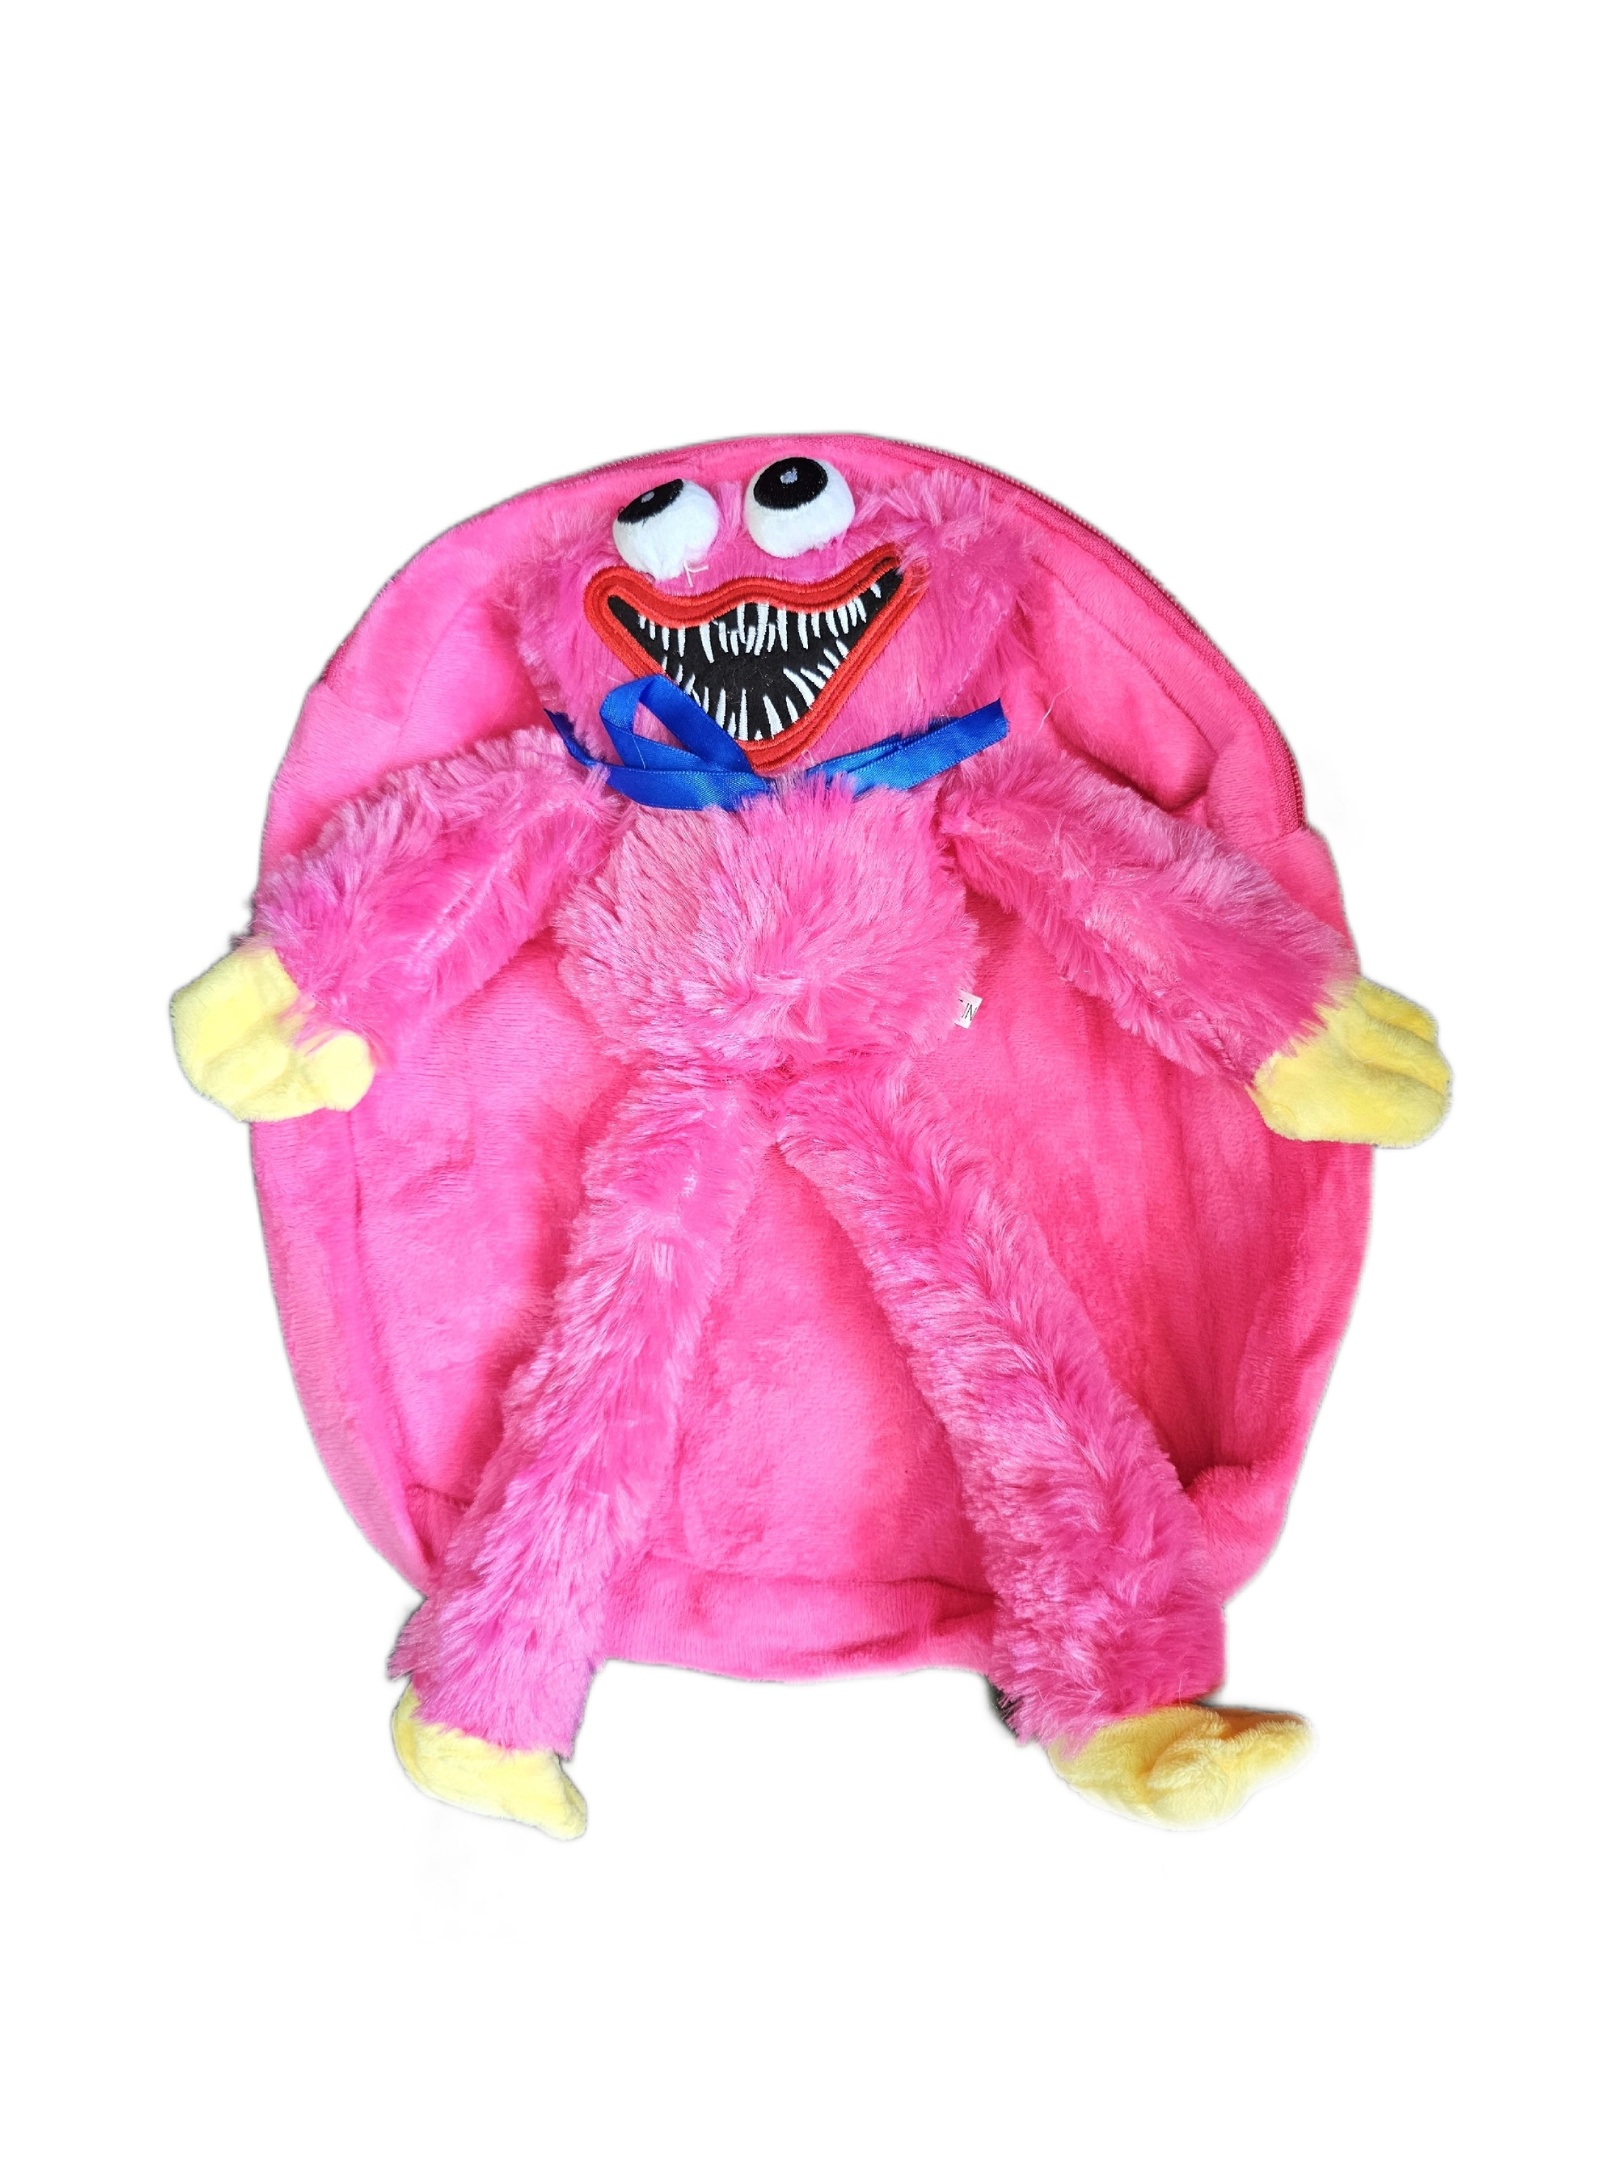 Рюкзак детский плюшевый с игрушкой Кисси Мисси Хаги Ваги, цвет розовый мягкая игрушка кисси мисси розовая 40 см